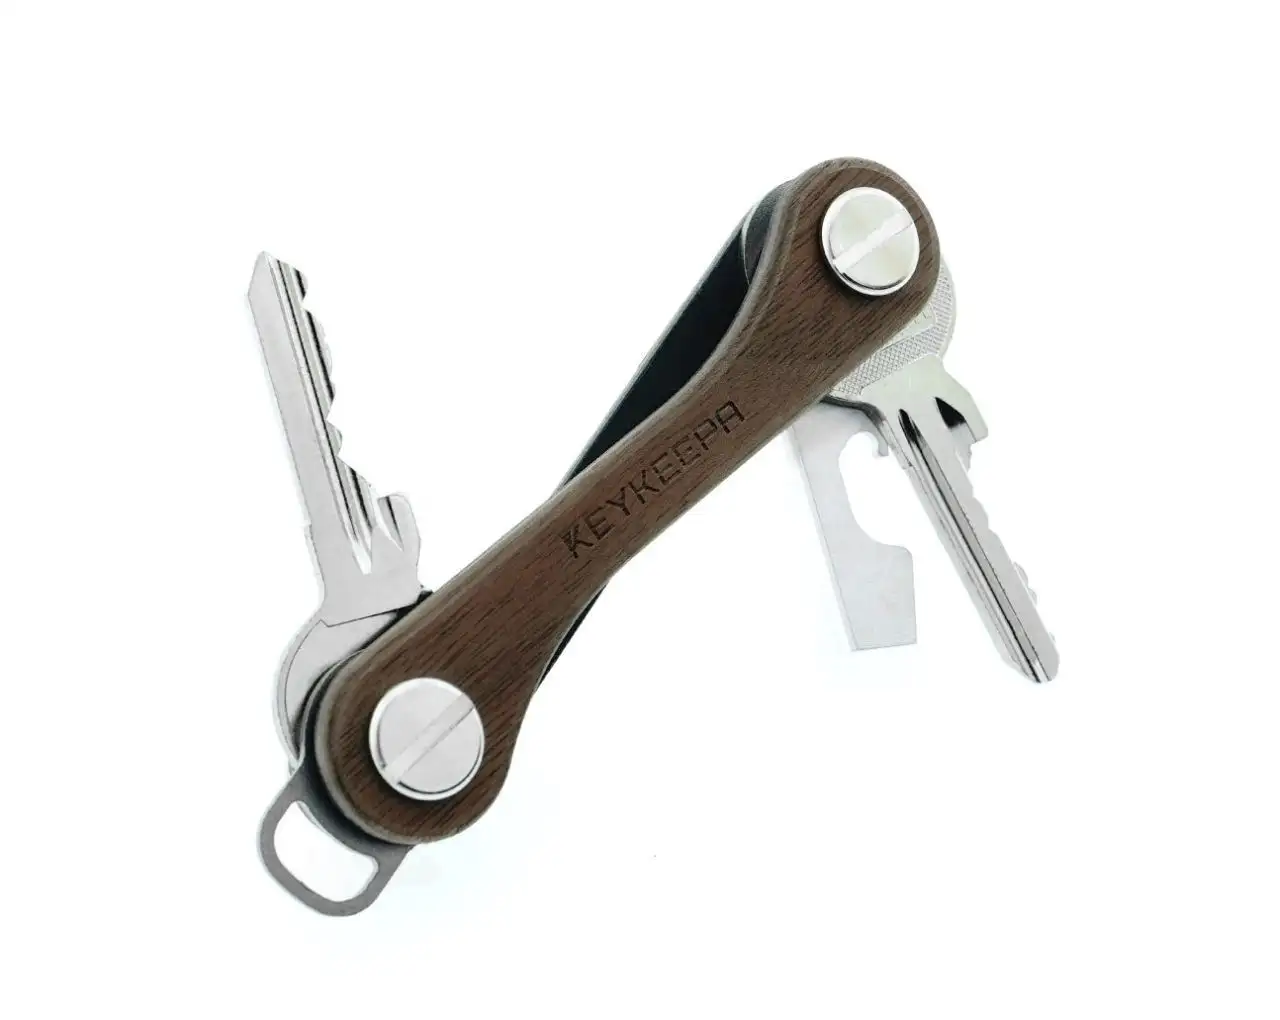 KeySmart Pro - Kompakter Schlüsselhalter mit Tile für 14 Schlüssel